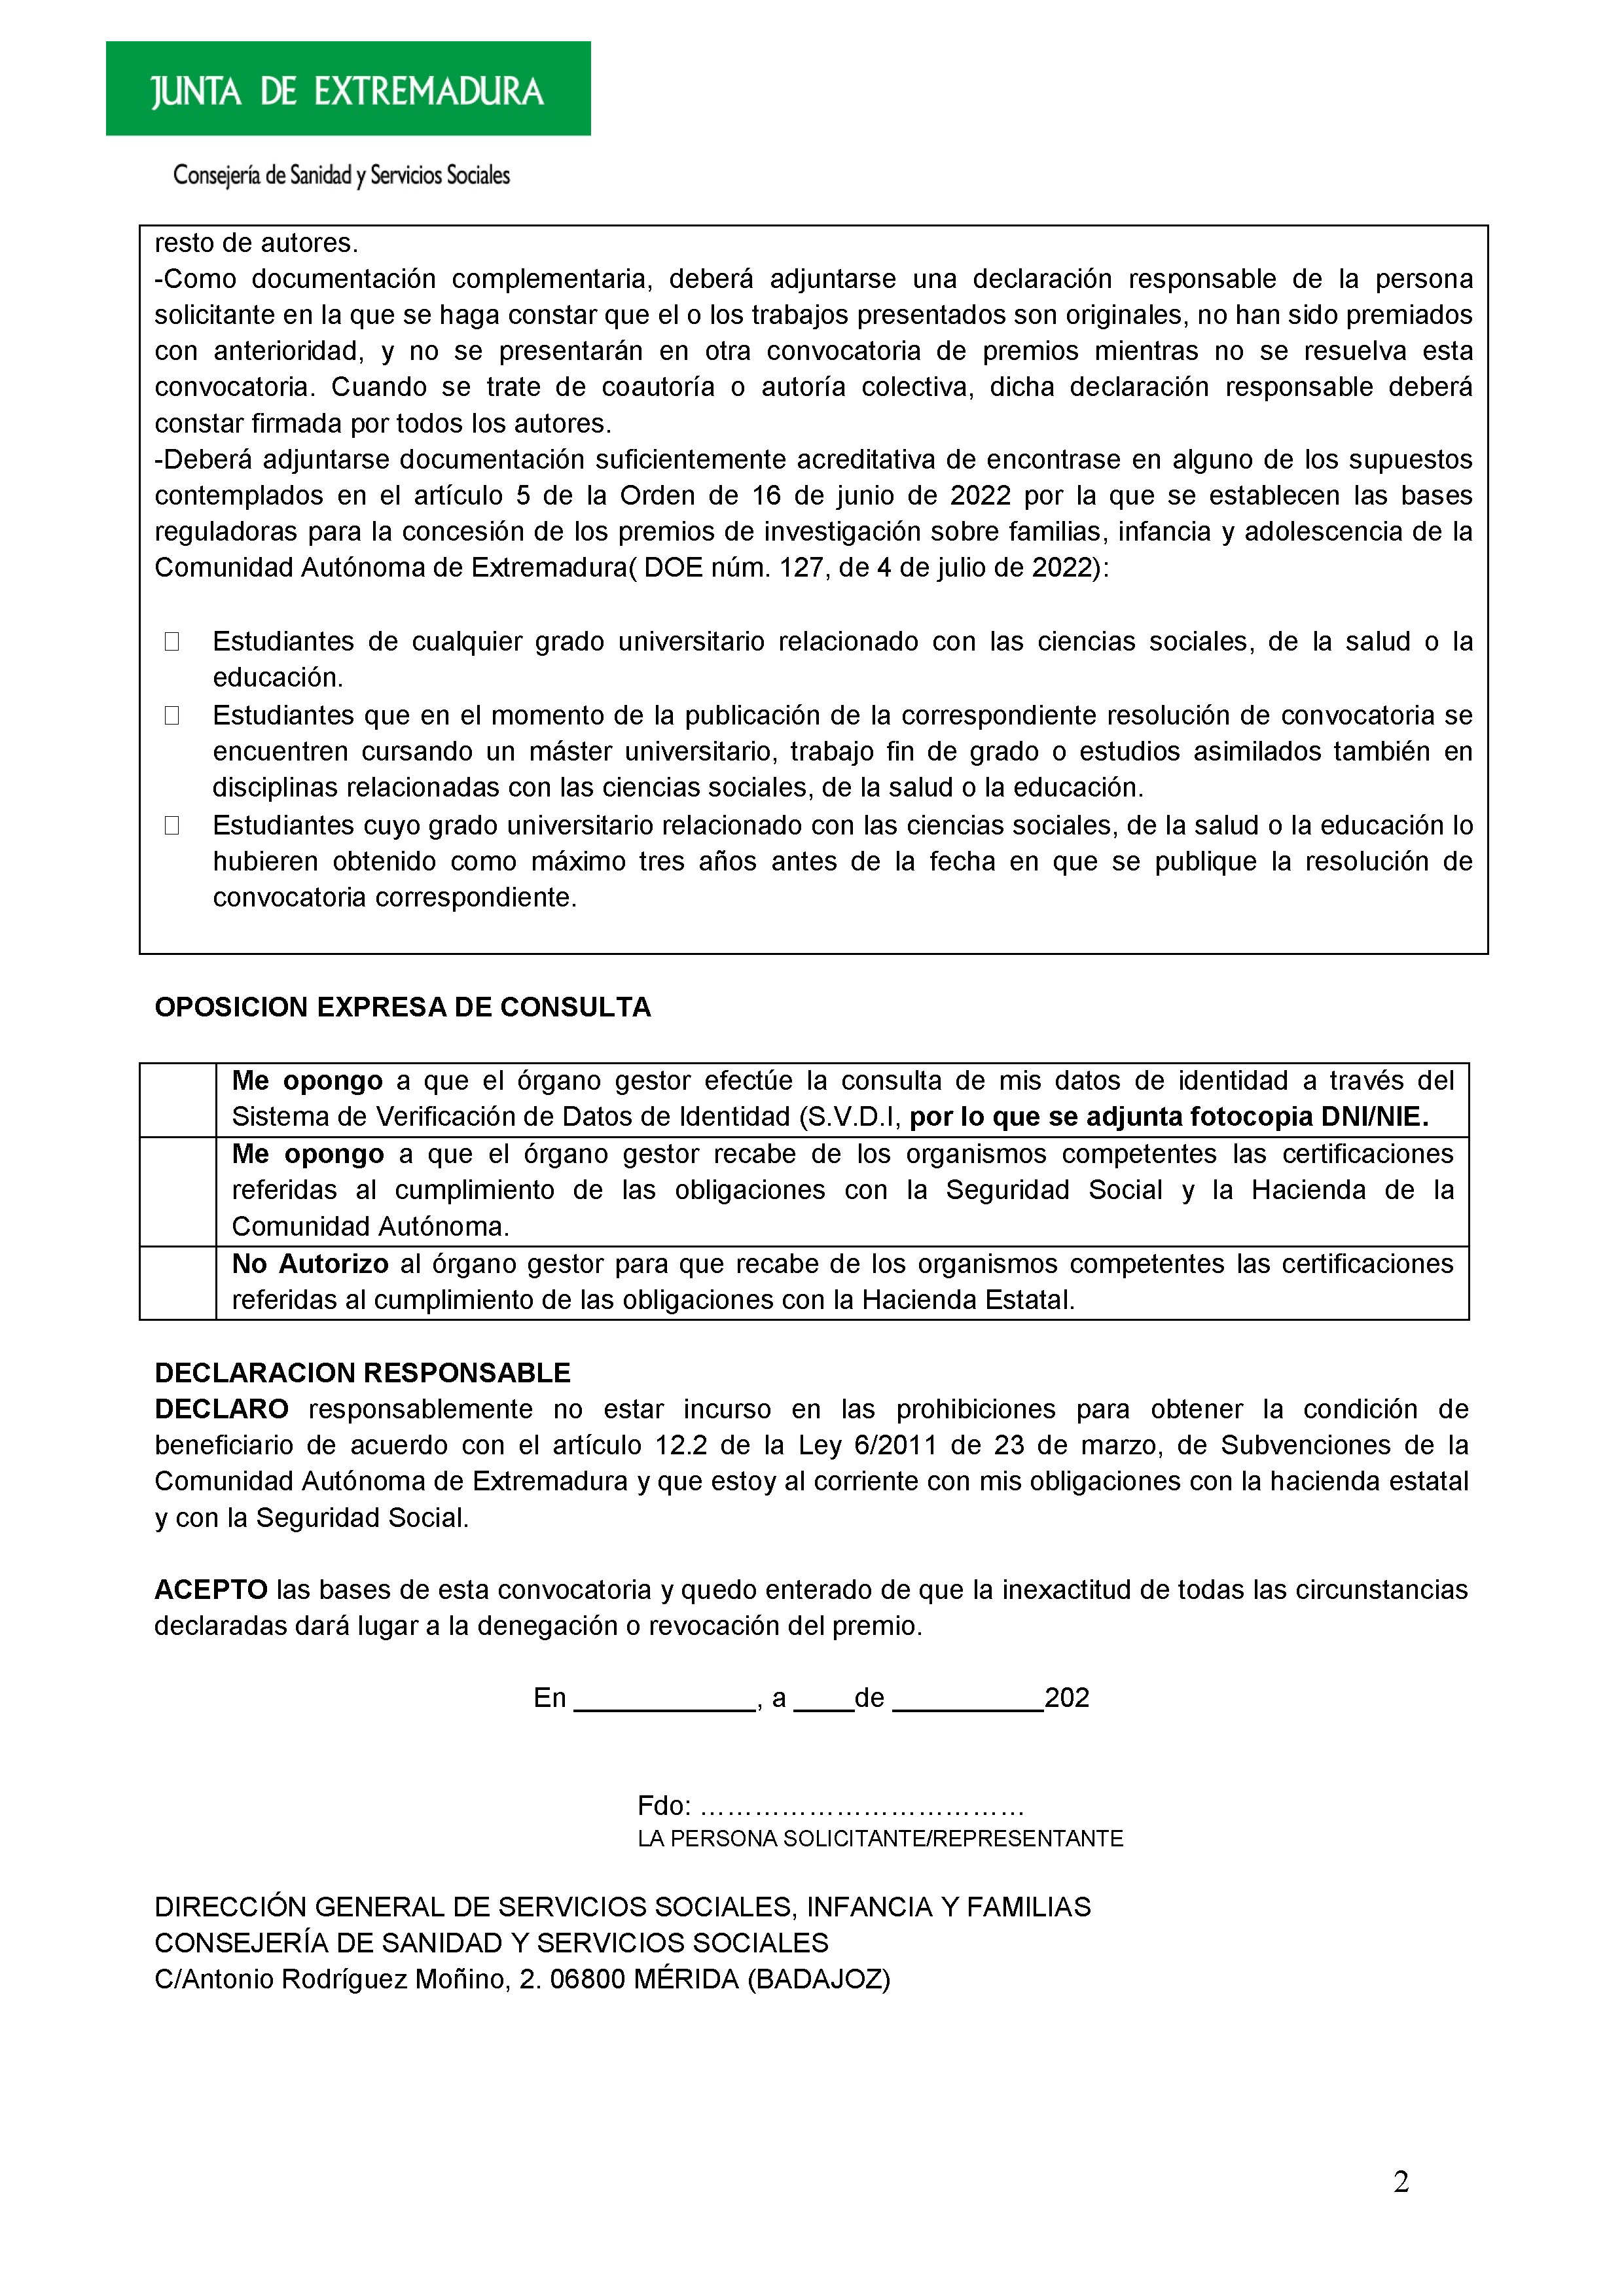 ANEXO I - I PREMIOS DE INVESTIGACION SOBRE FAMILIAS, INFANCIA Y ADOLESCENCIA DE EXTREMADURA PAG.1